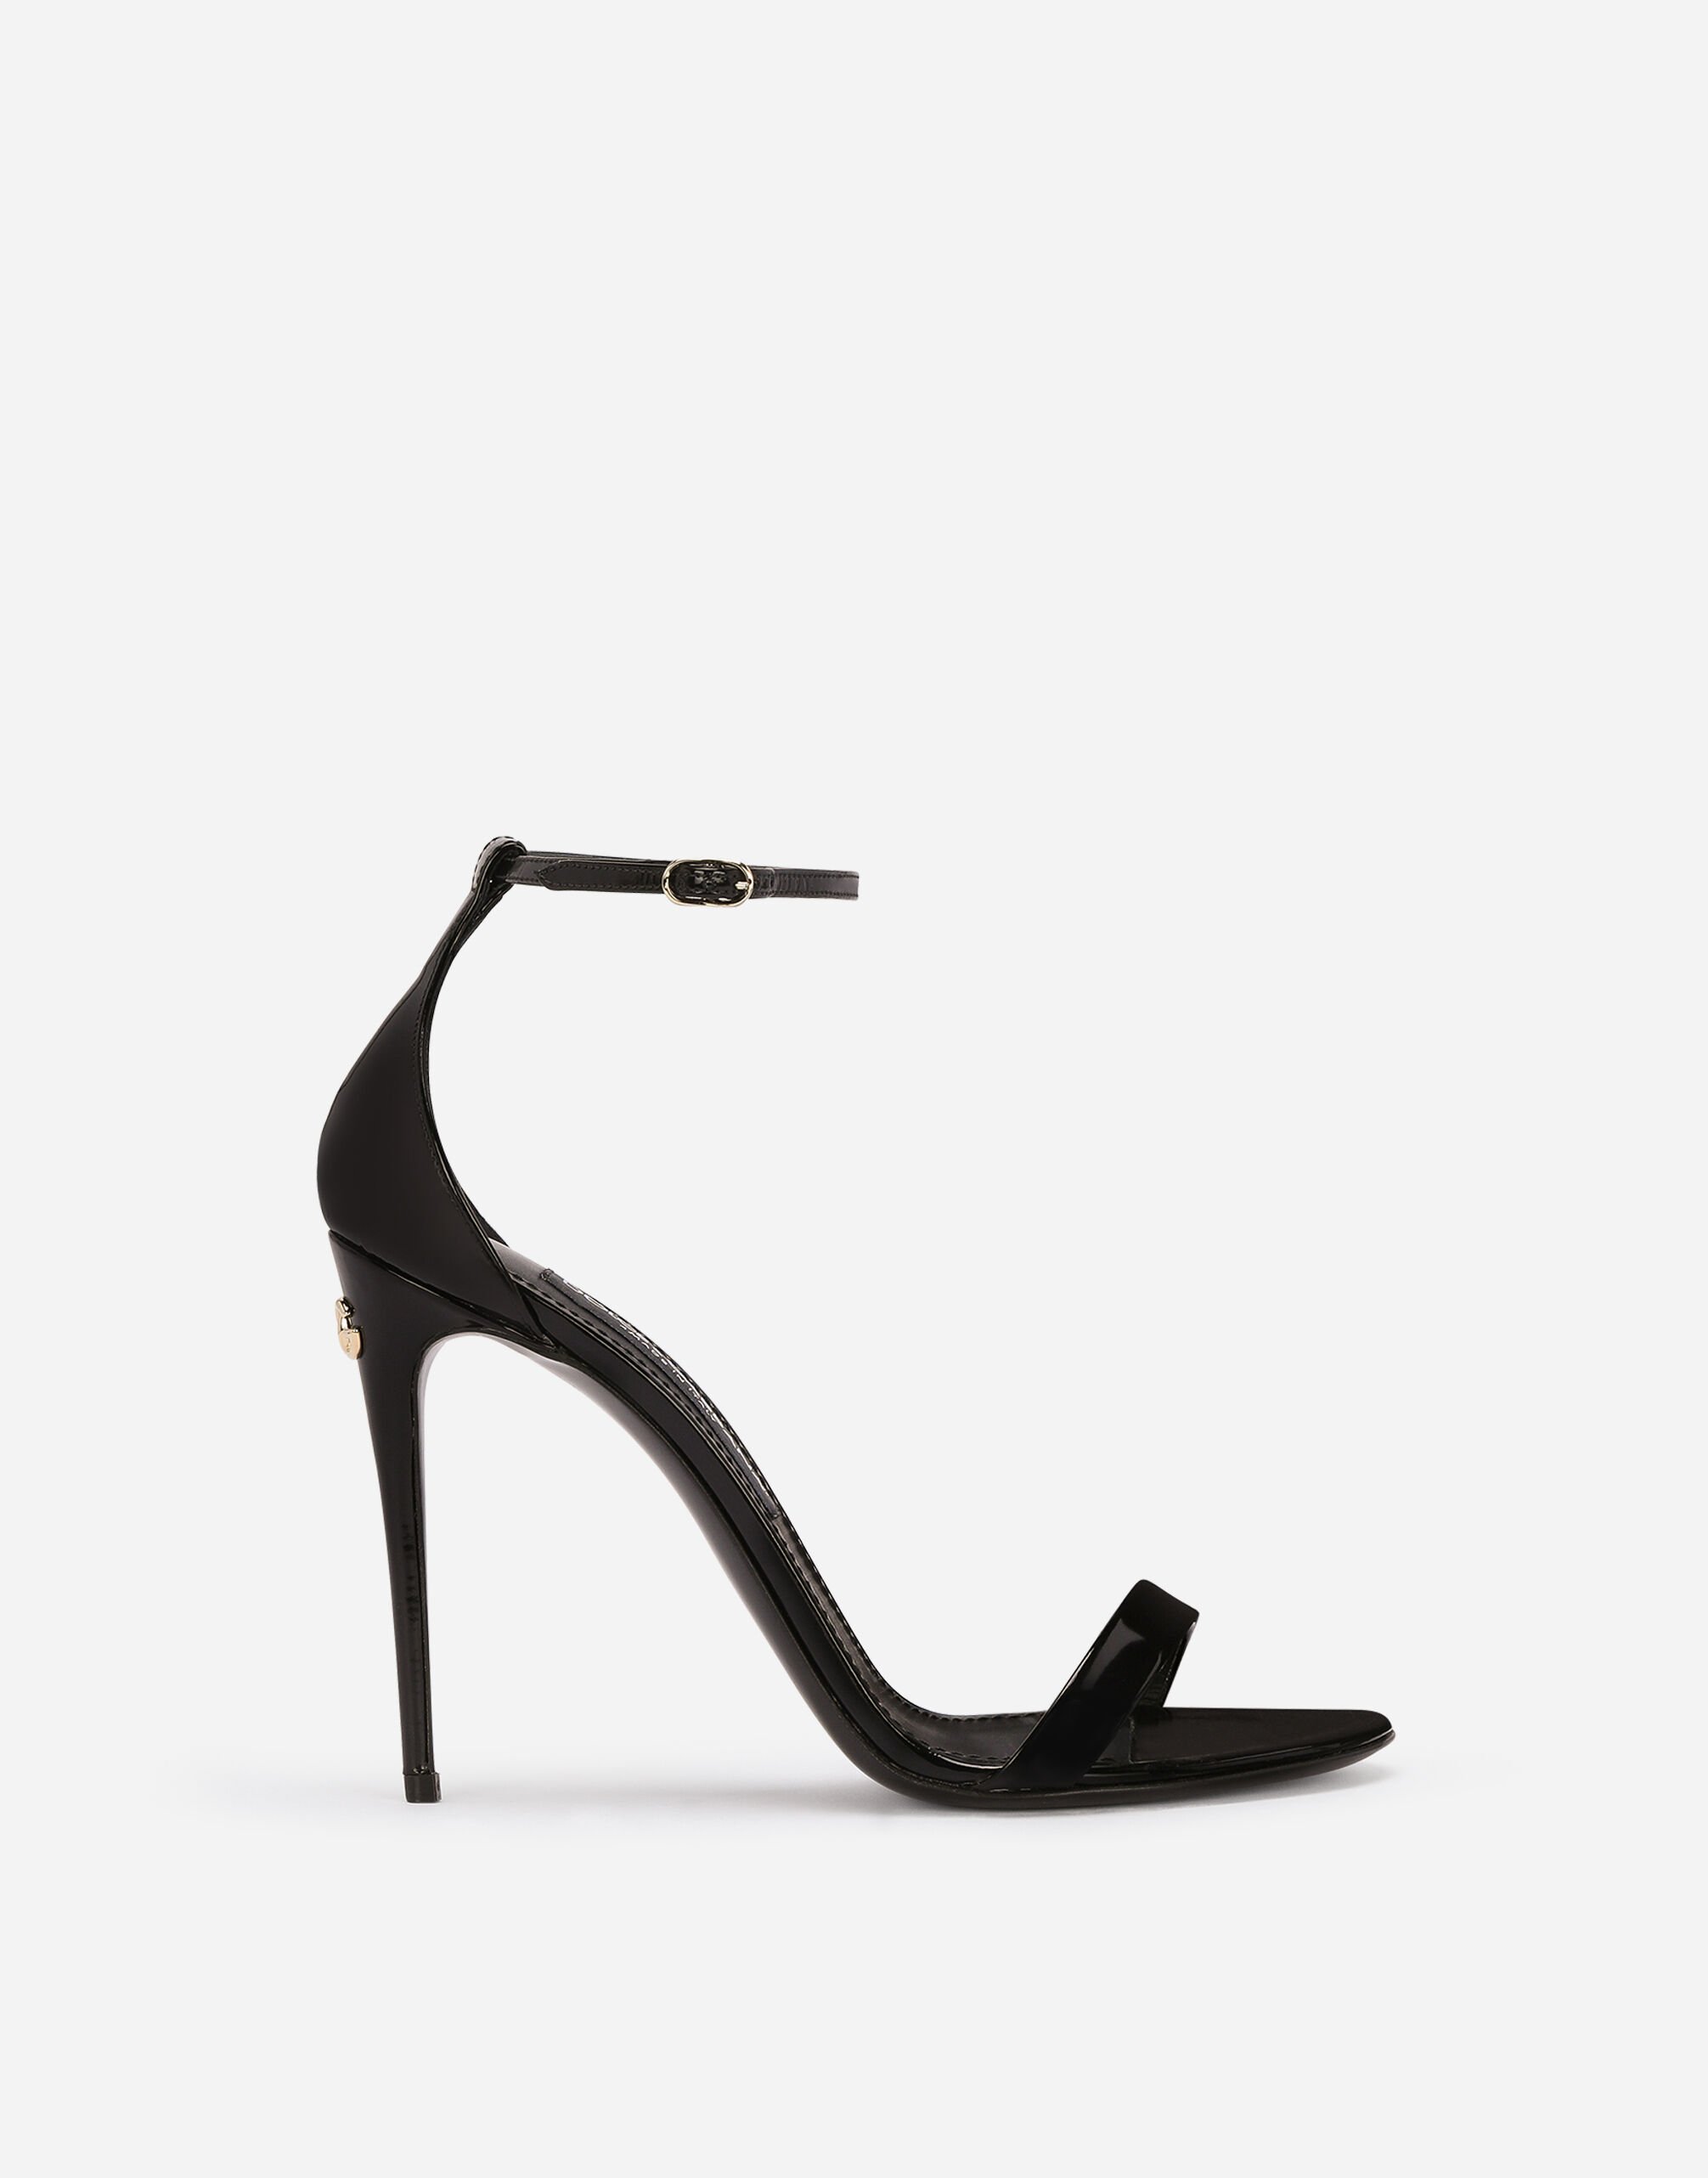 Dolce & Gabbana Polished calfskin sandals Black F6DFDTFLSIO